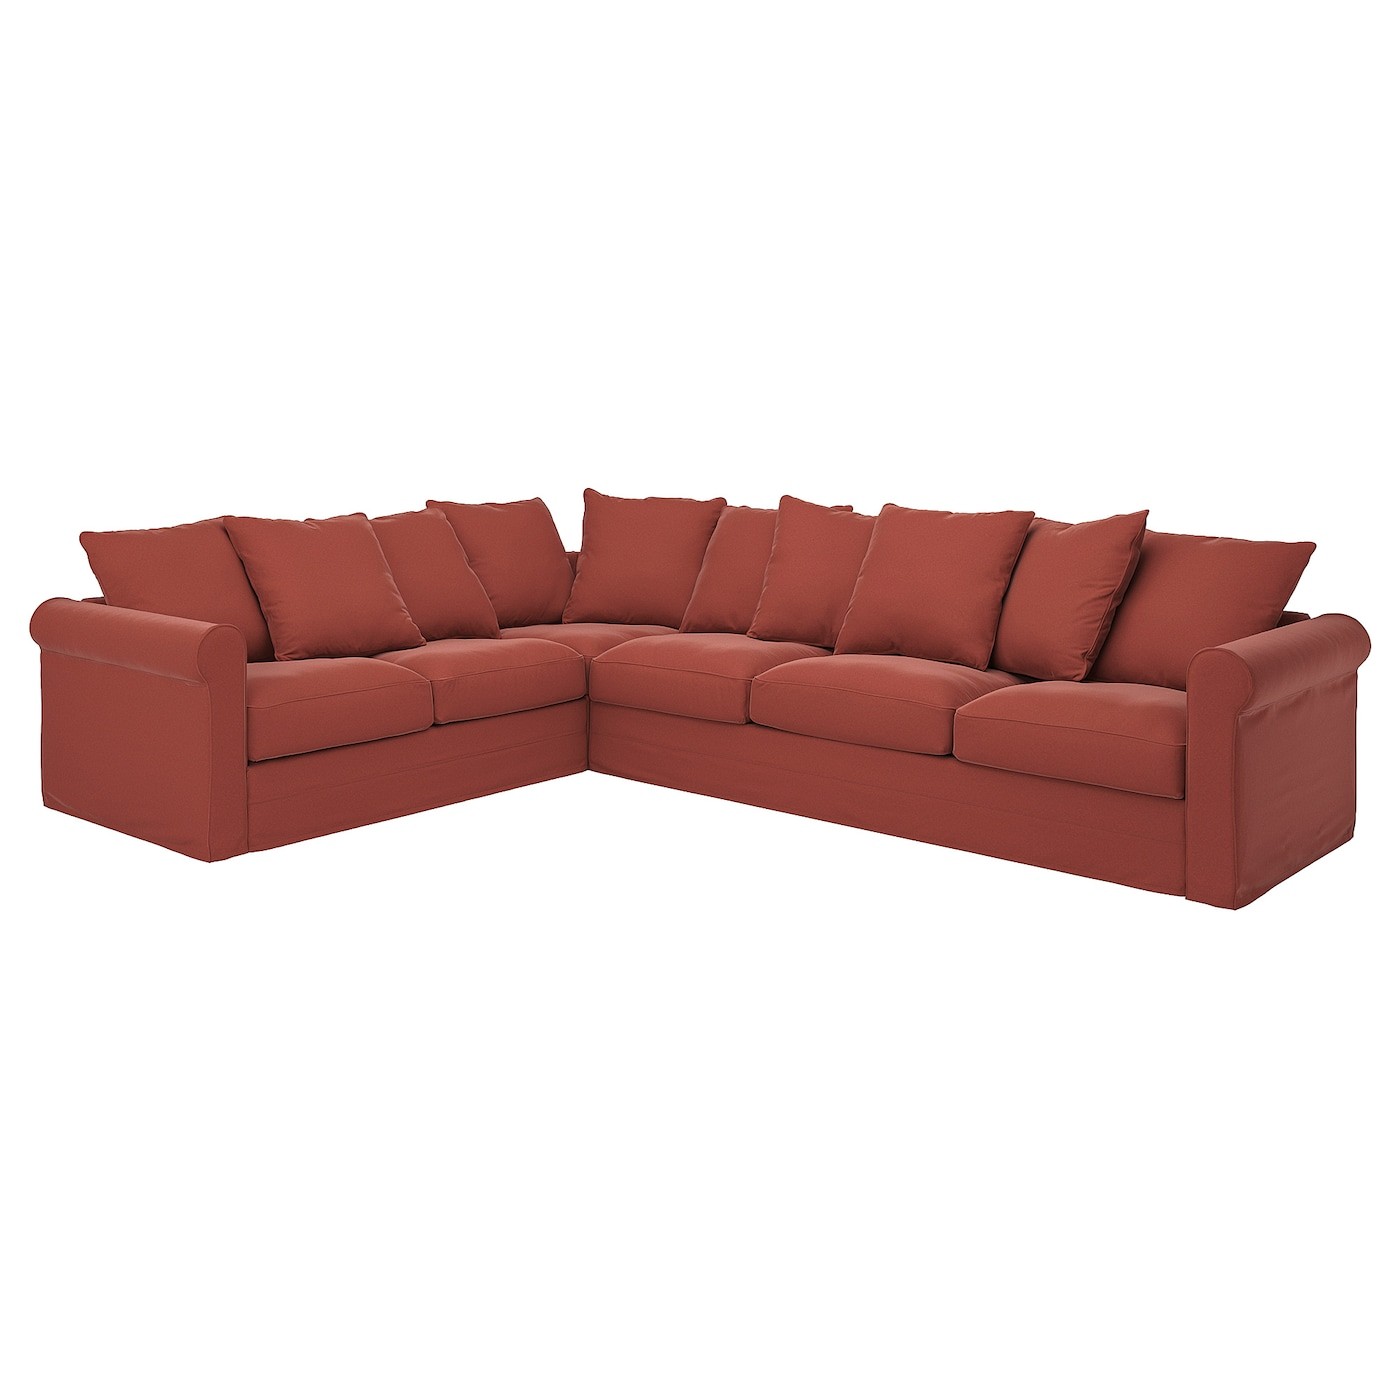 GRÖNLID Cover for corner sofa, 5-seat